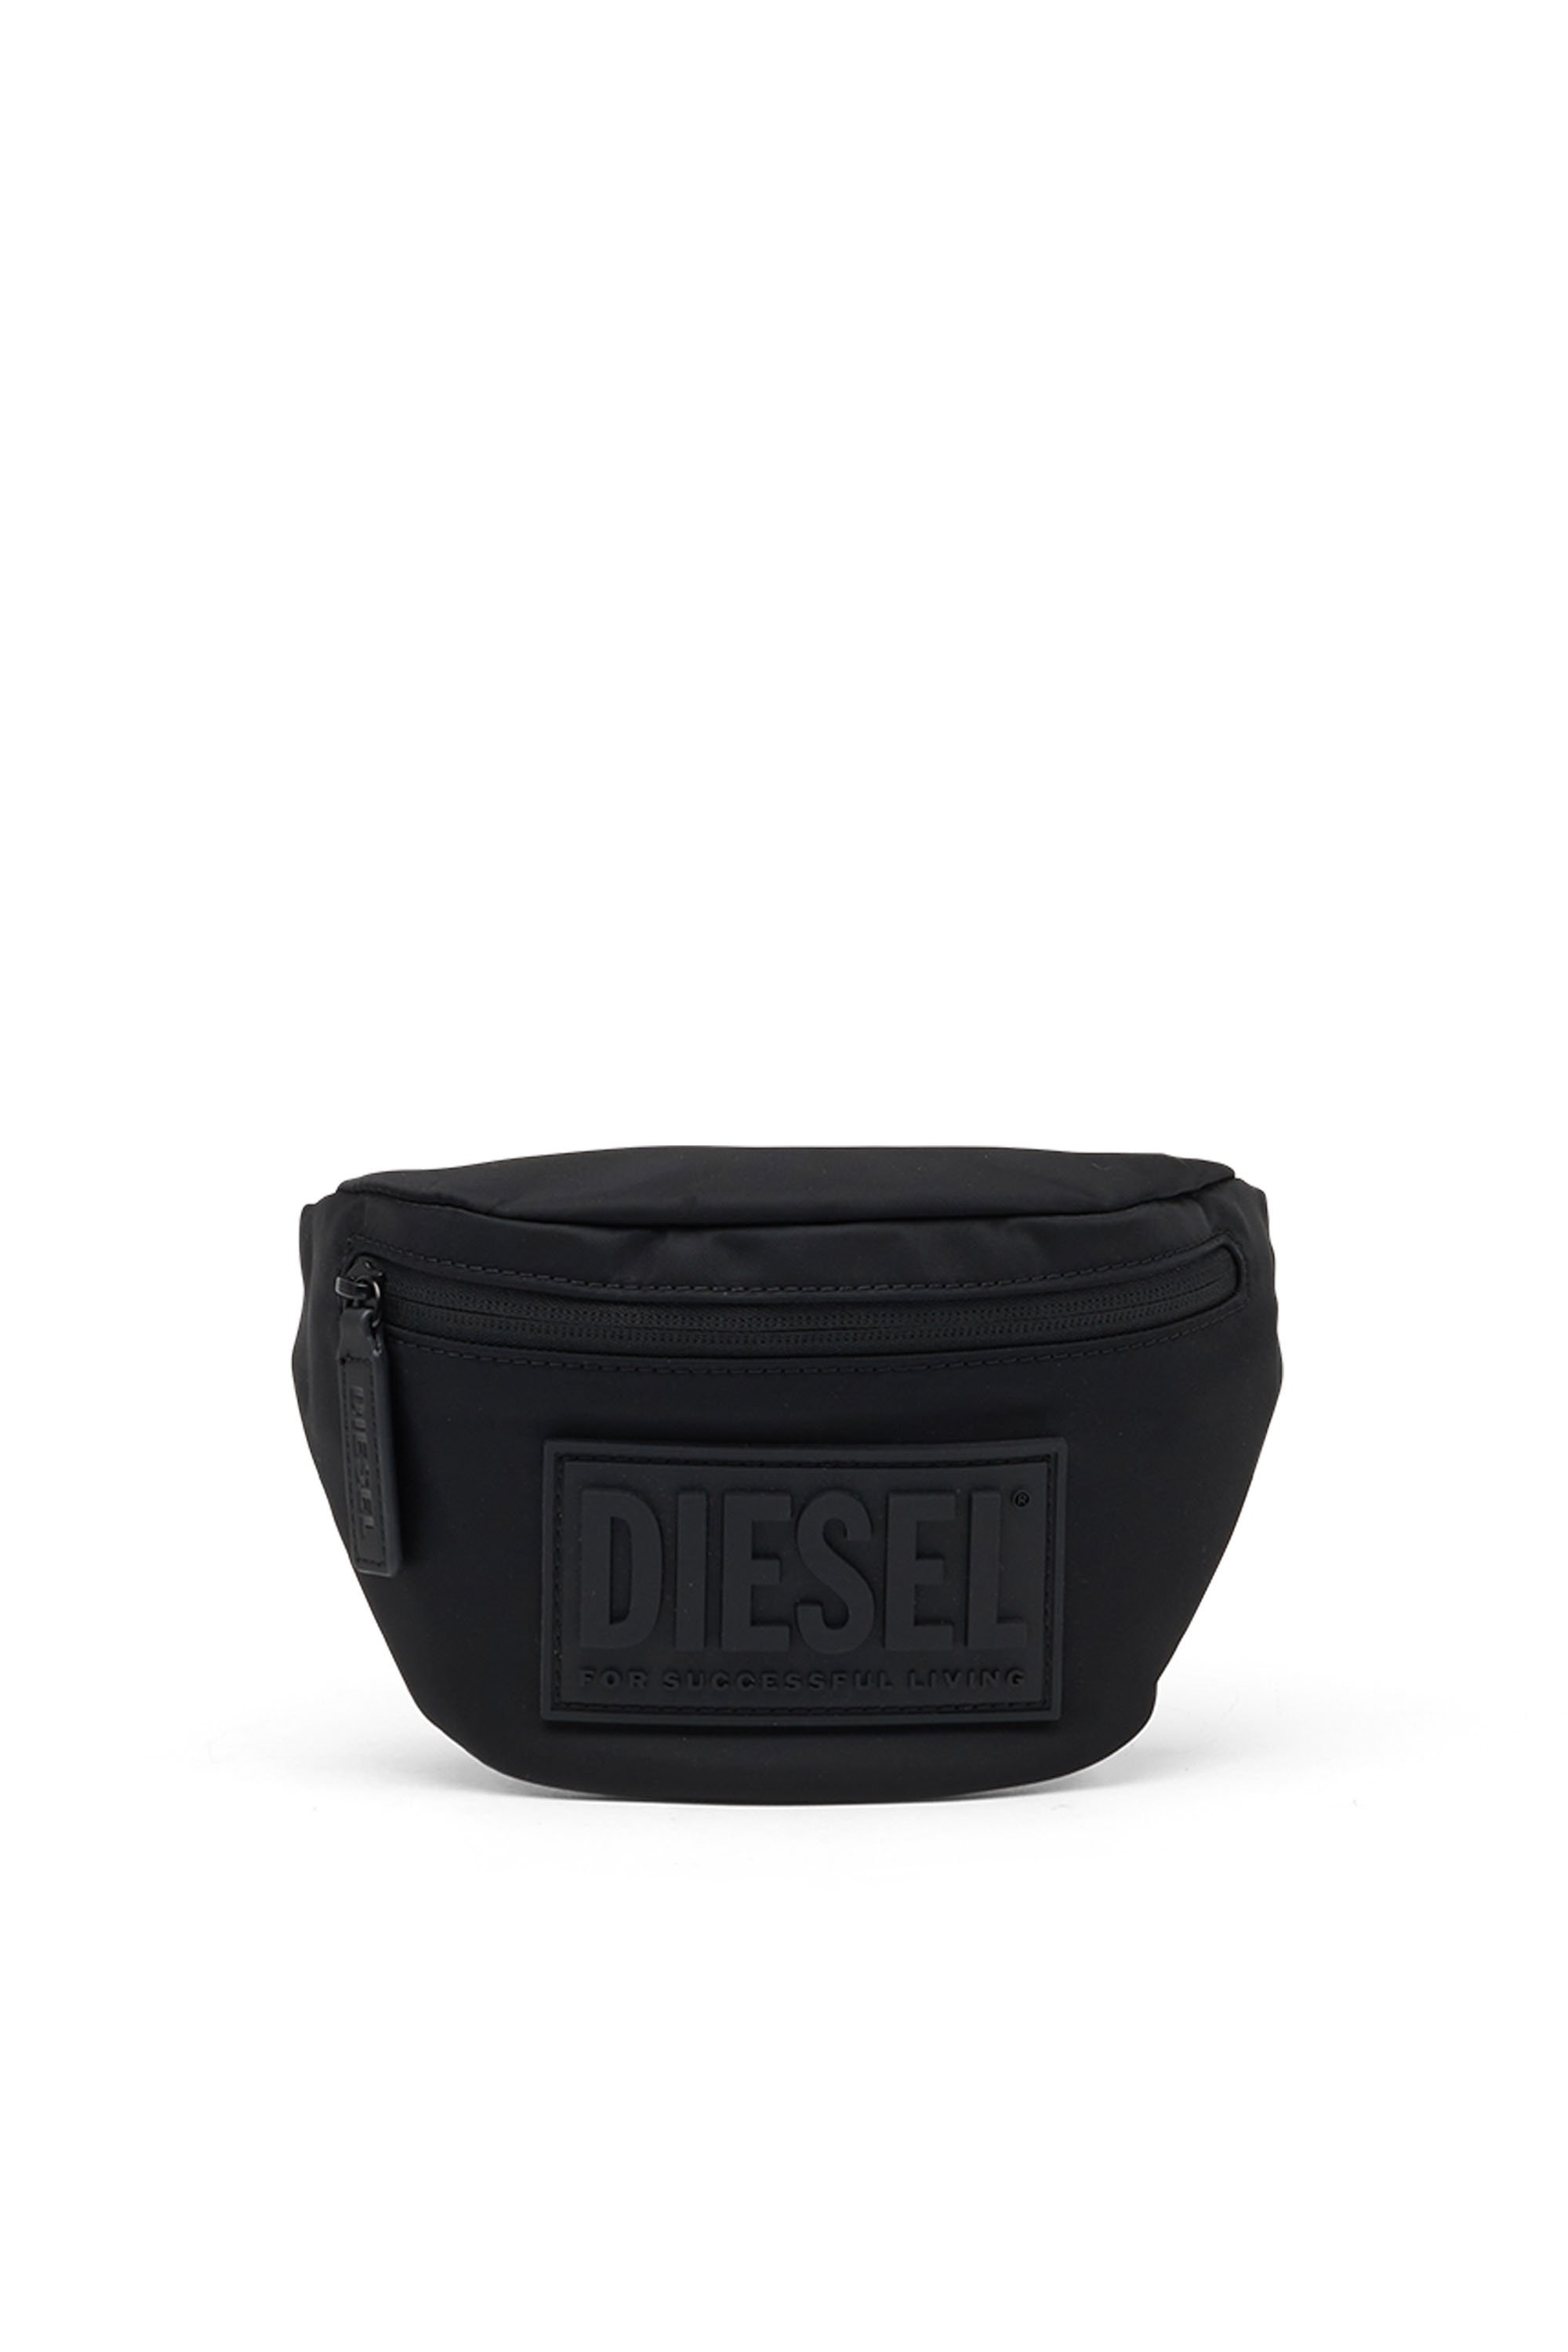 Diesel - BELTB55, Noir - Image 1